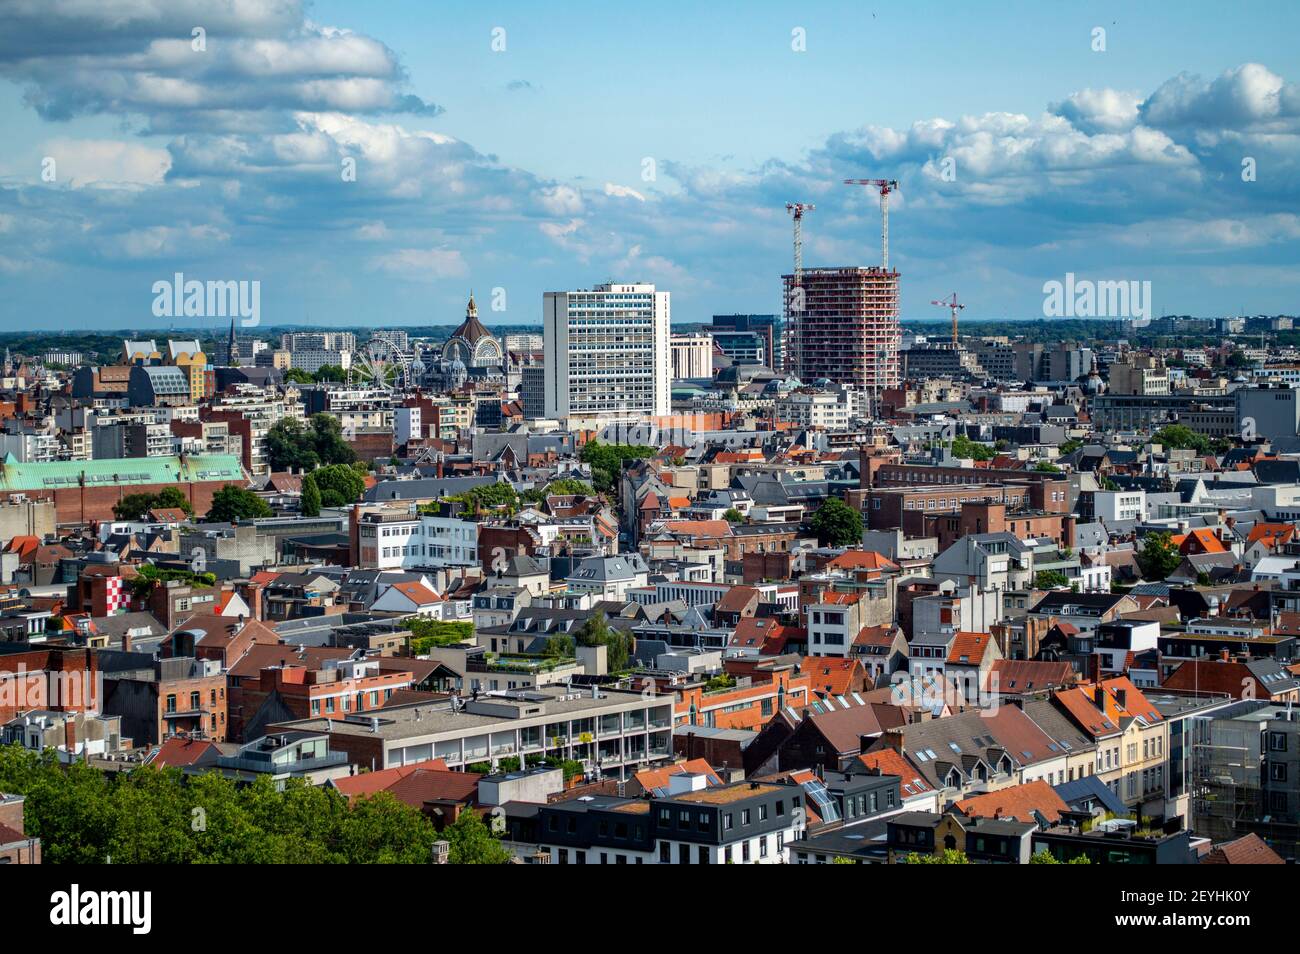 Antwerpen, Belgien - 12. Juli 2019: Luftaufnahme der Stadt Antwerpen in Belgien, mit alten und modernen Gebäuden Stockfoto